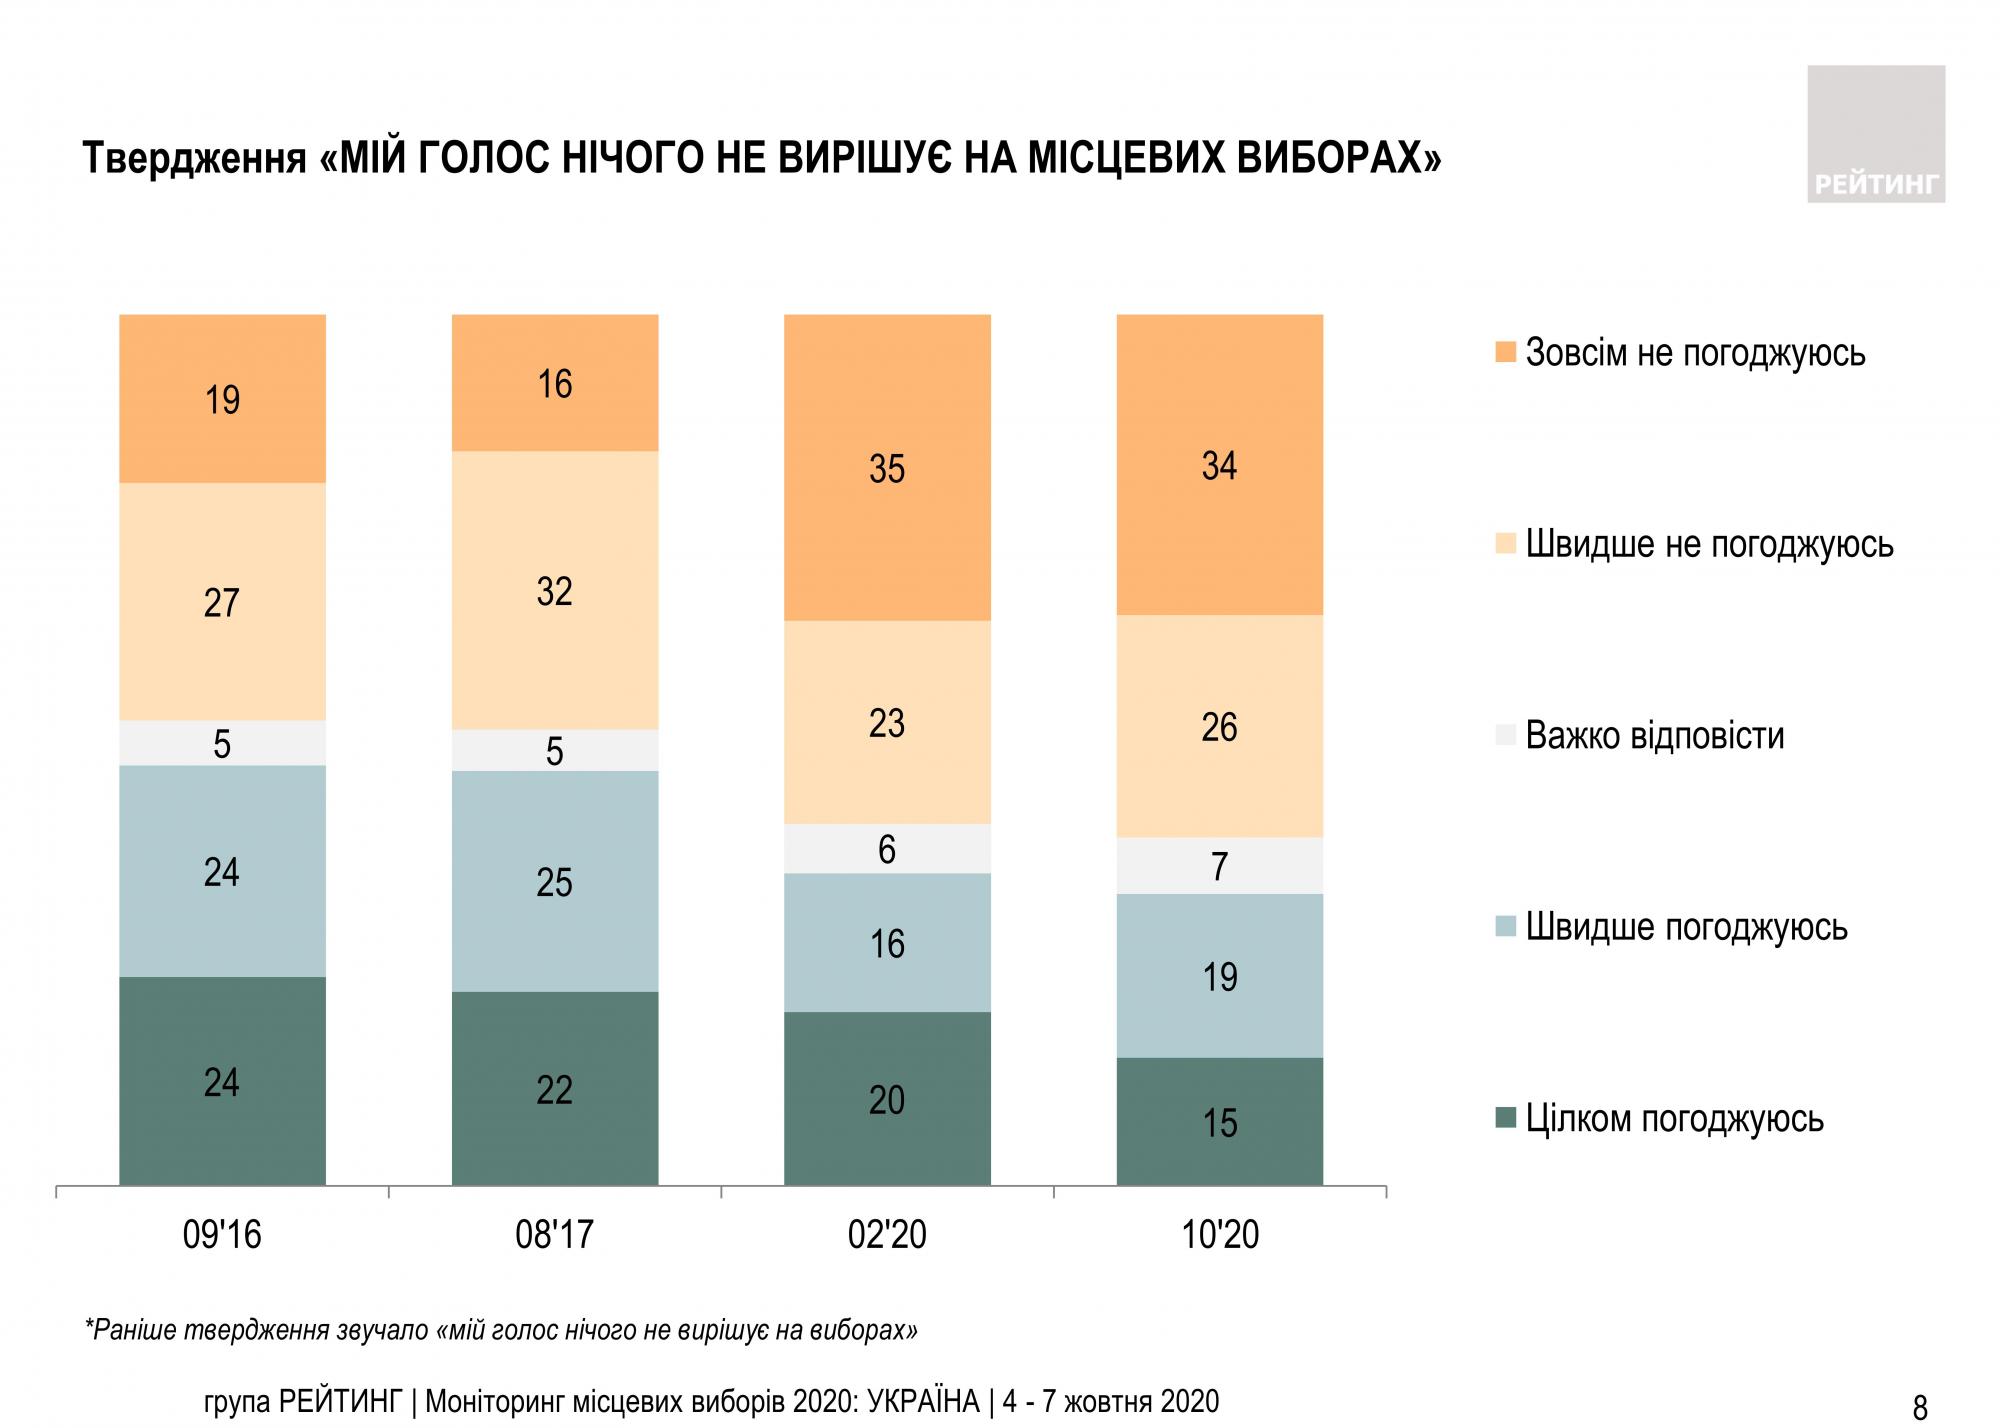 Большинство украинцев уверены в важности собственного голоса на выборах